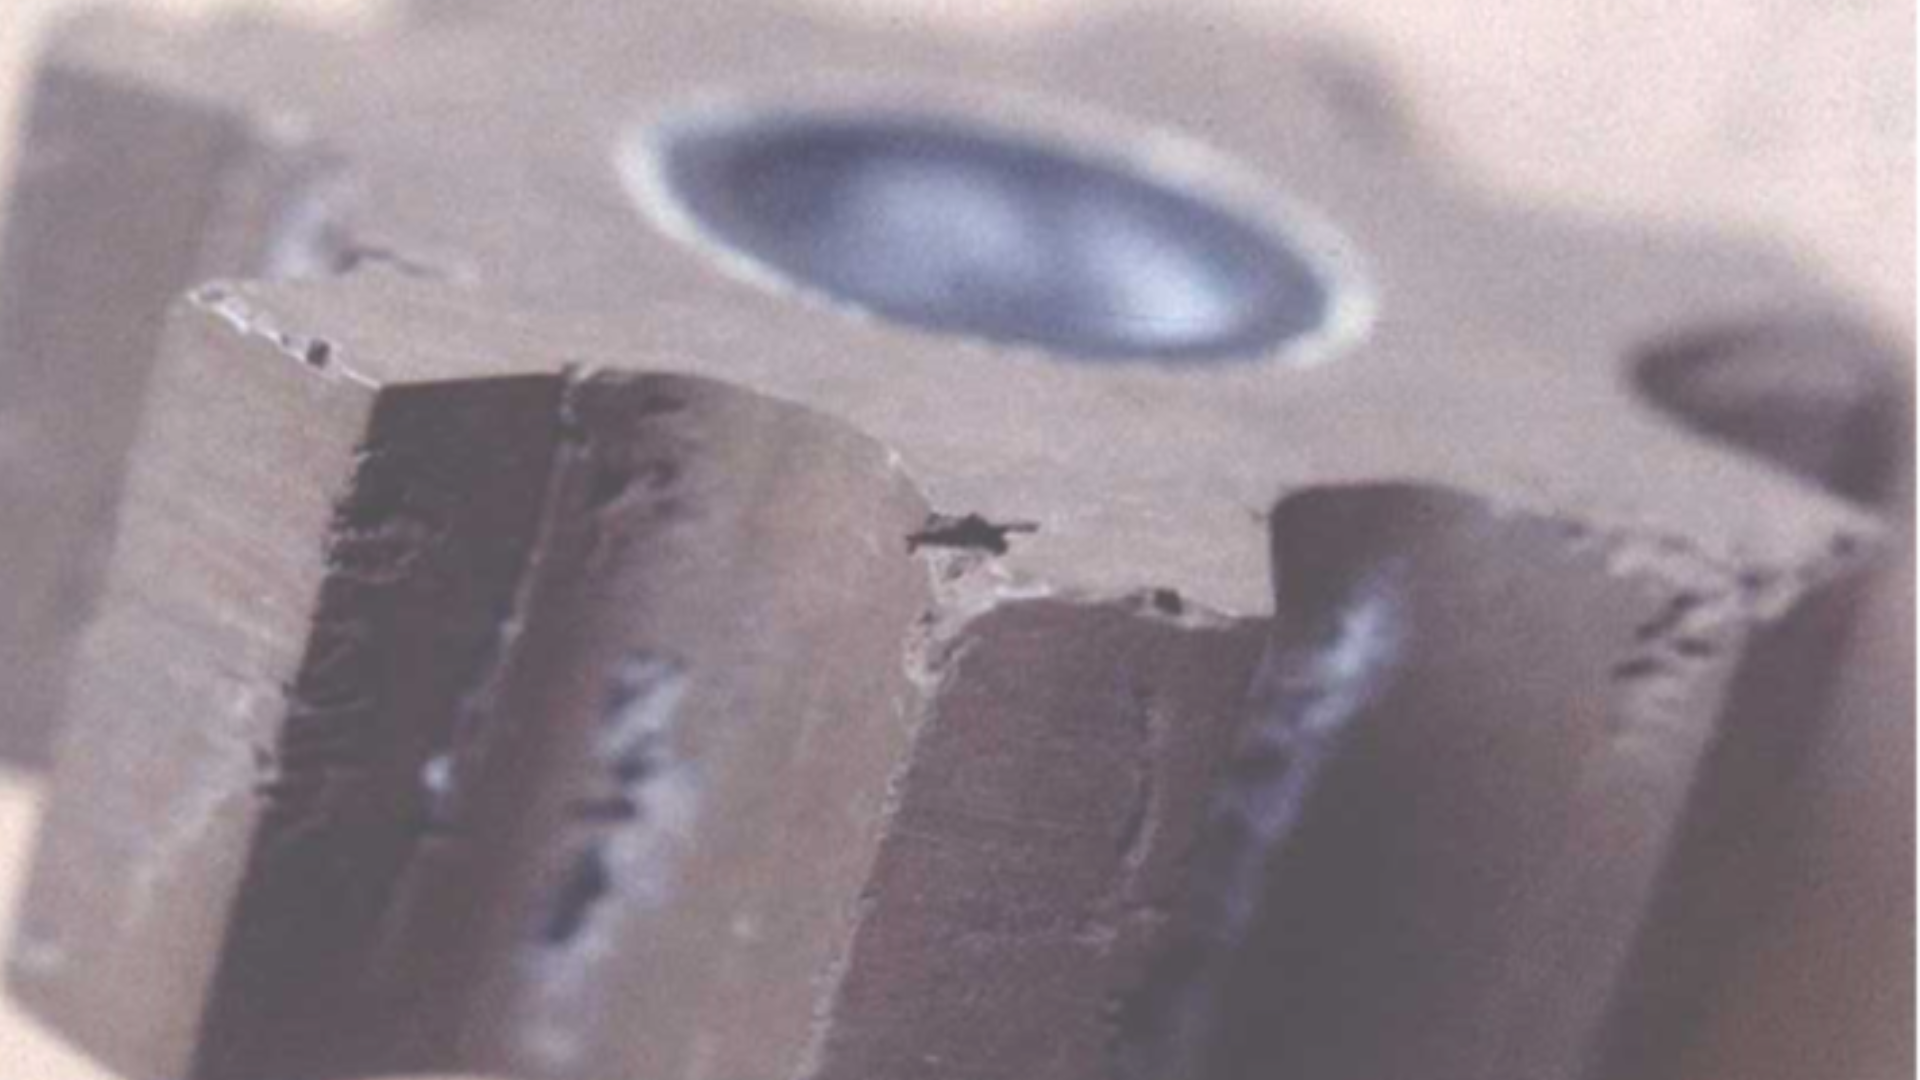 Damaged Rotor close up